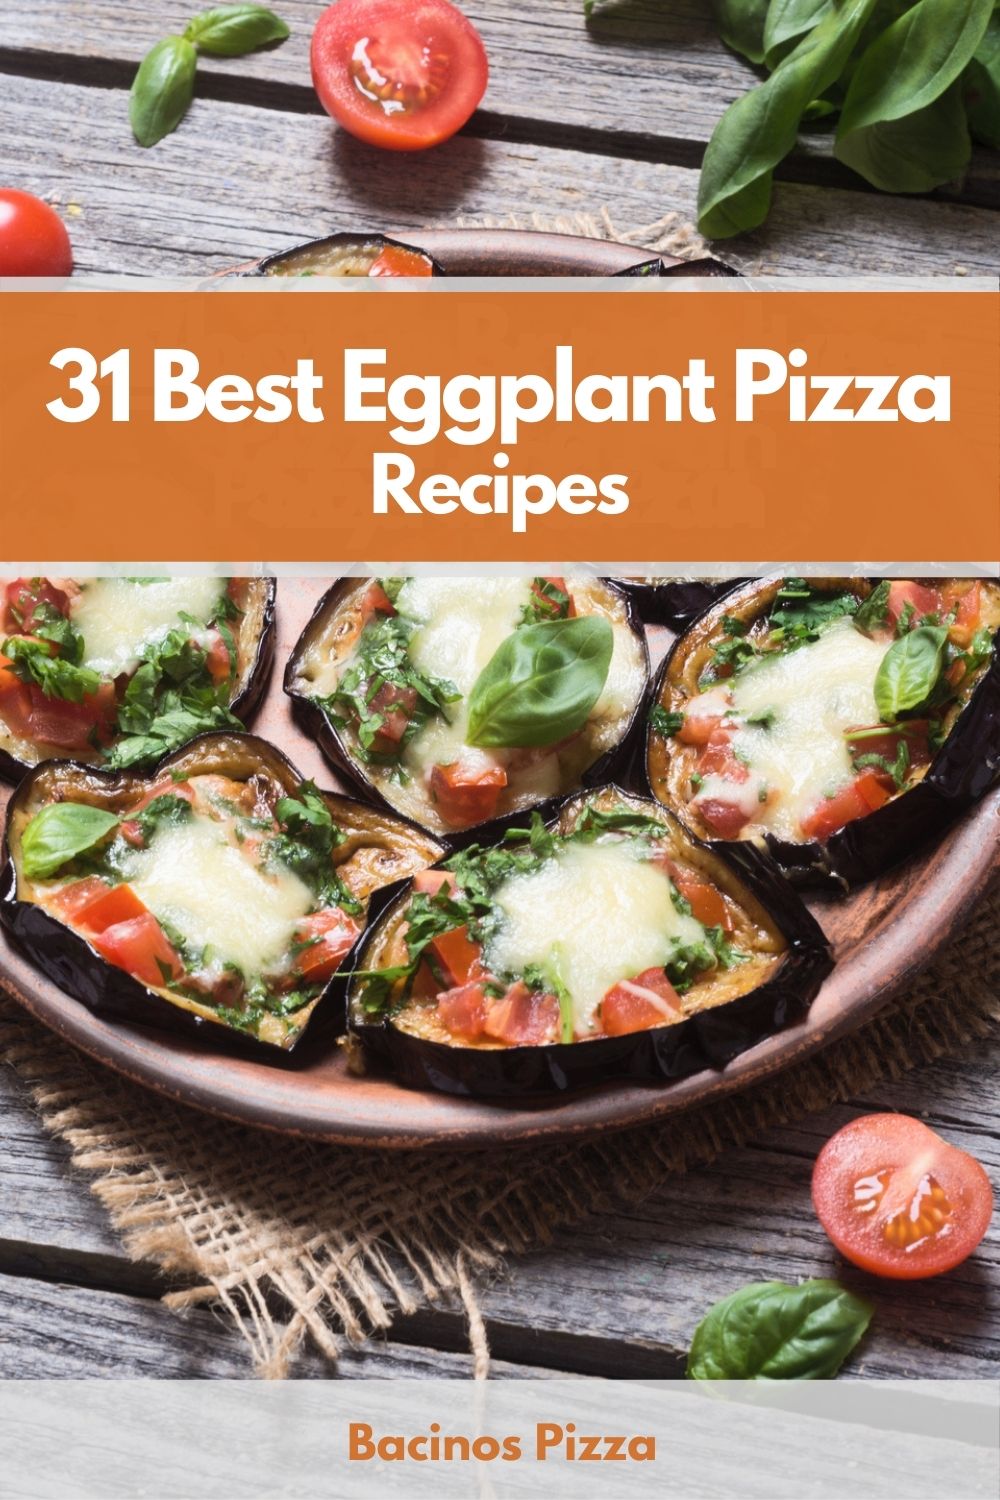 31 Best Eggplant Pizza Recipes pin